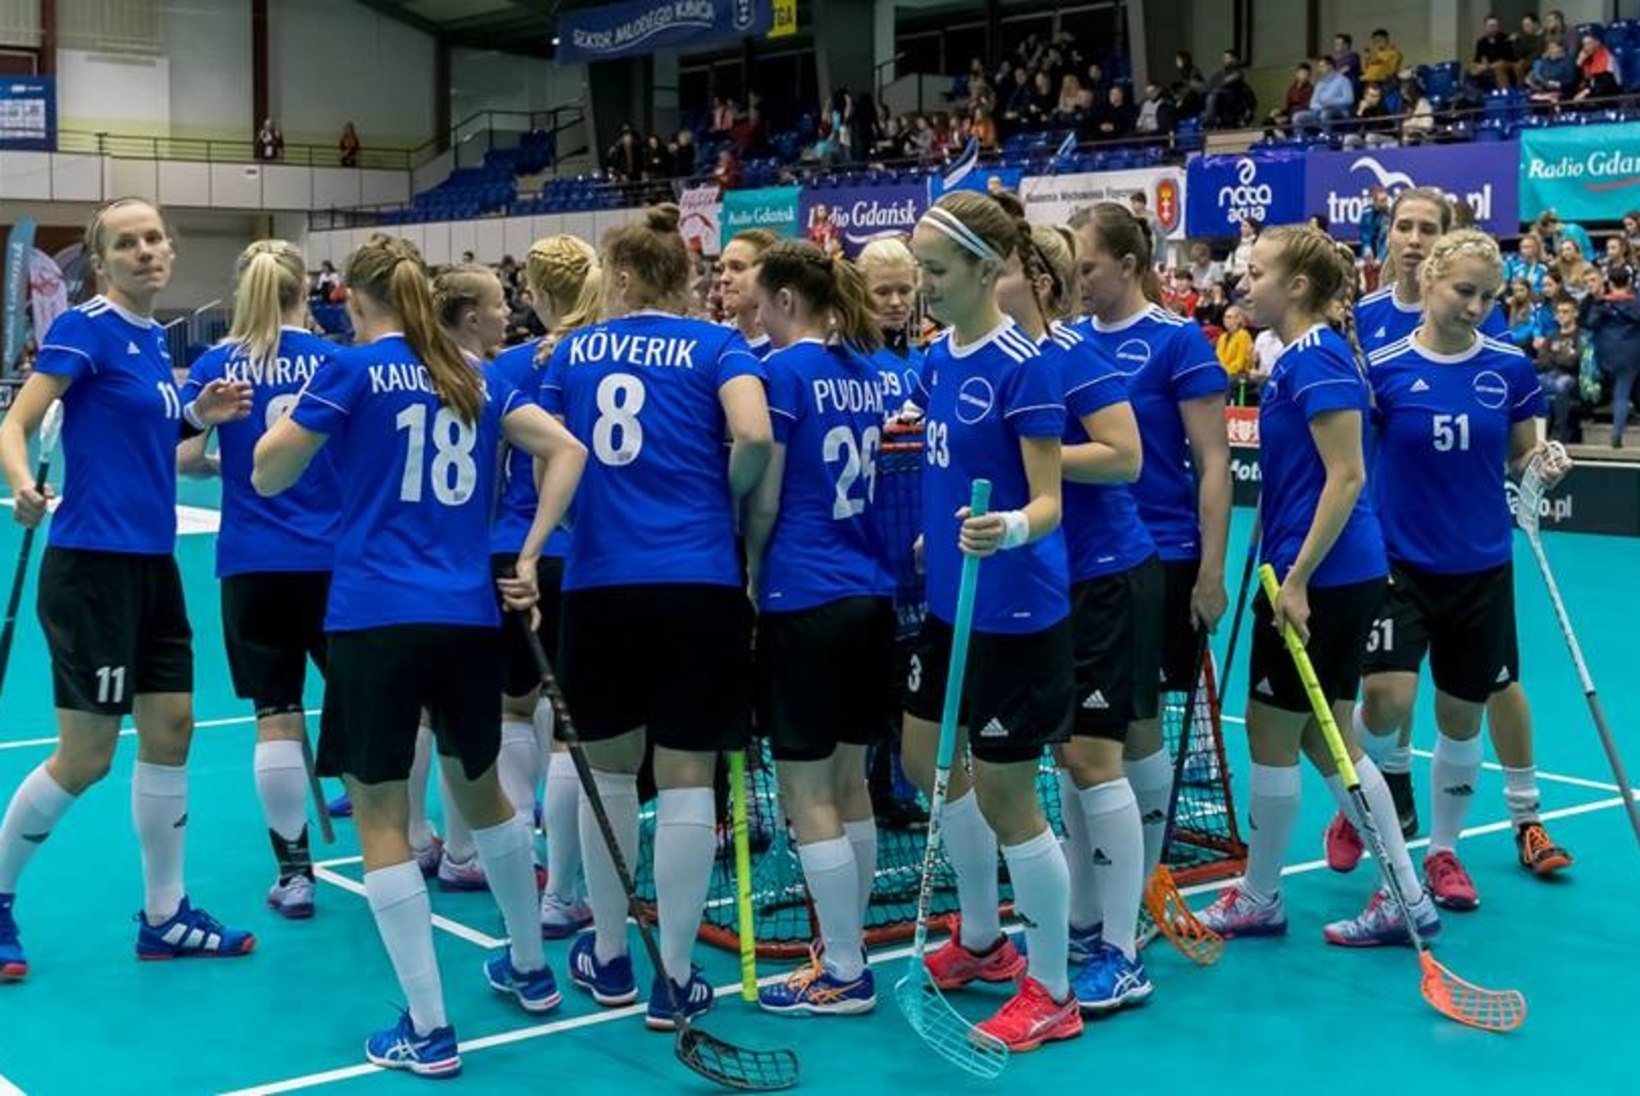 Eesti saalihokinaiskond pääses MM-finaalturniirile